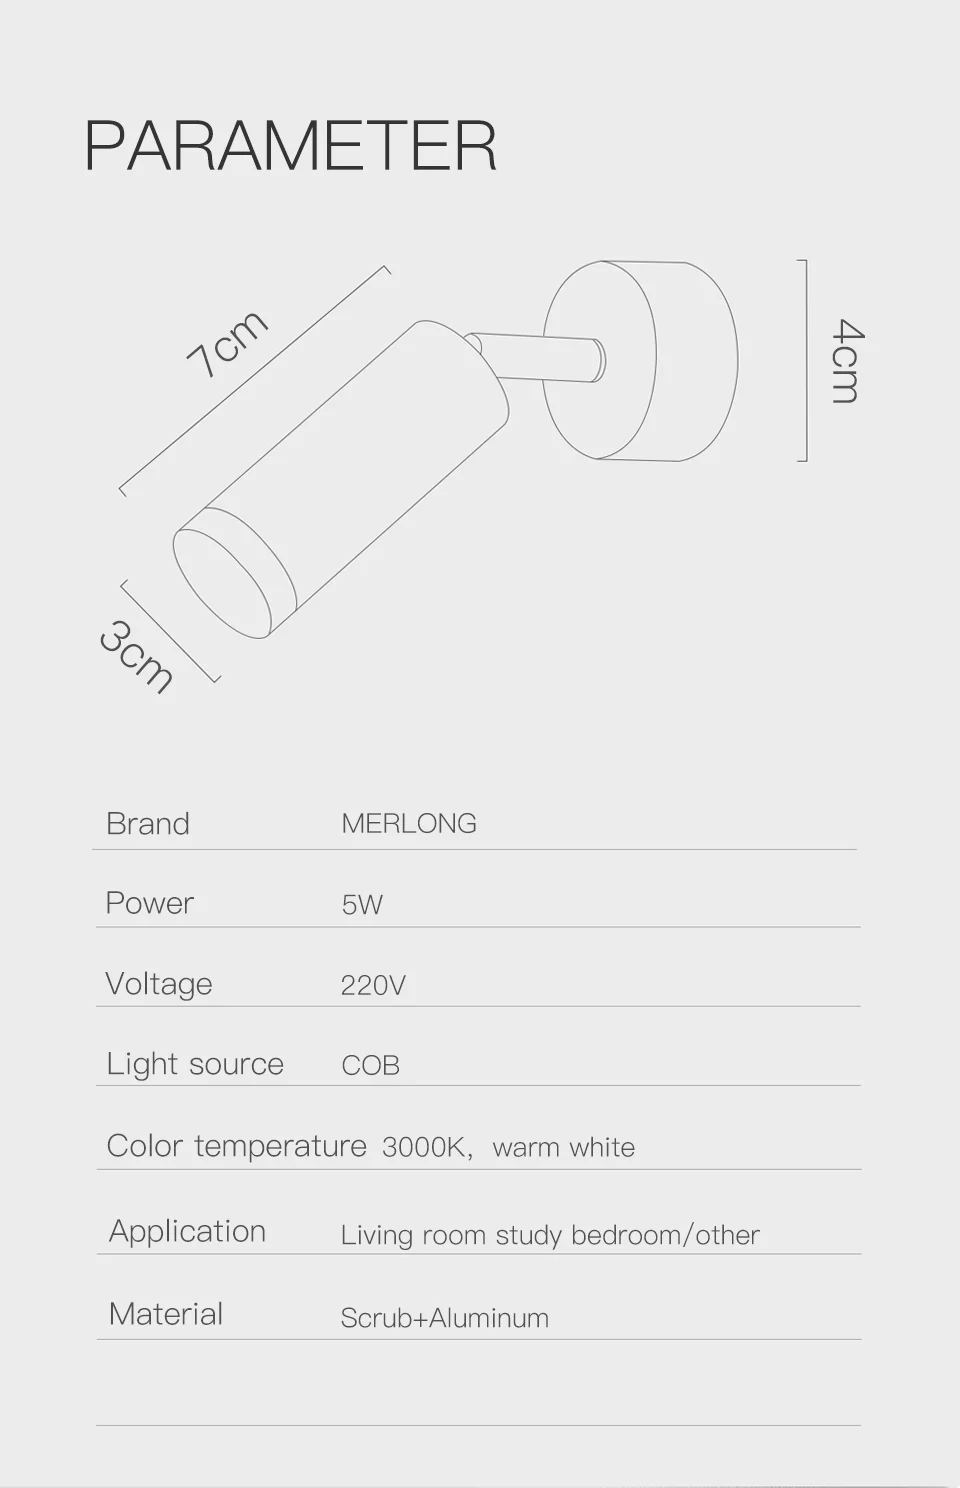 Светодиодный мини-настенный светильник с поворотом на 350 ° и поворотом на 180 ° классический черный/белый стиль общий дизайн parsimony выглядит проворным